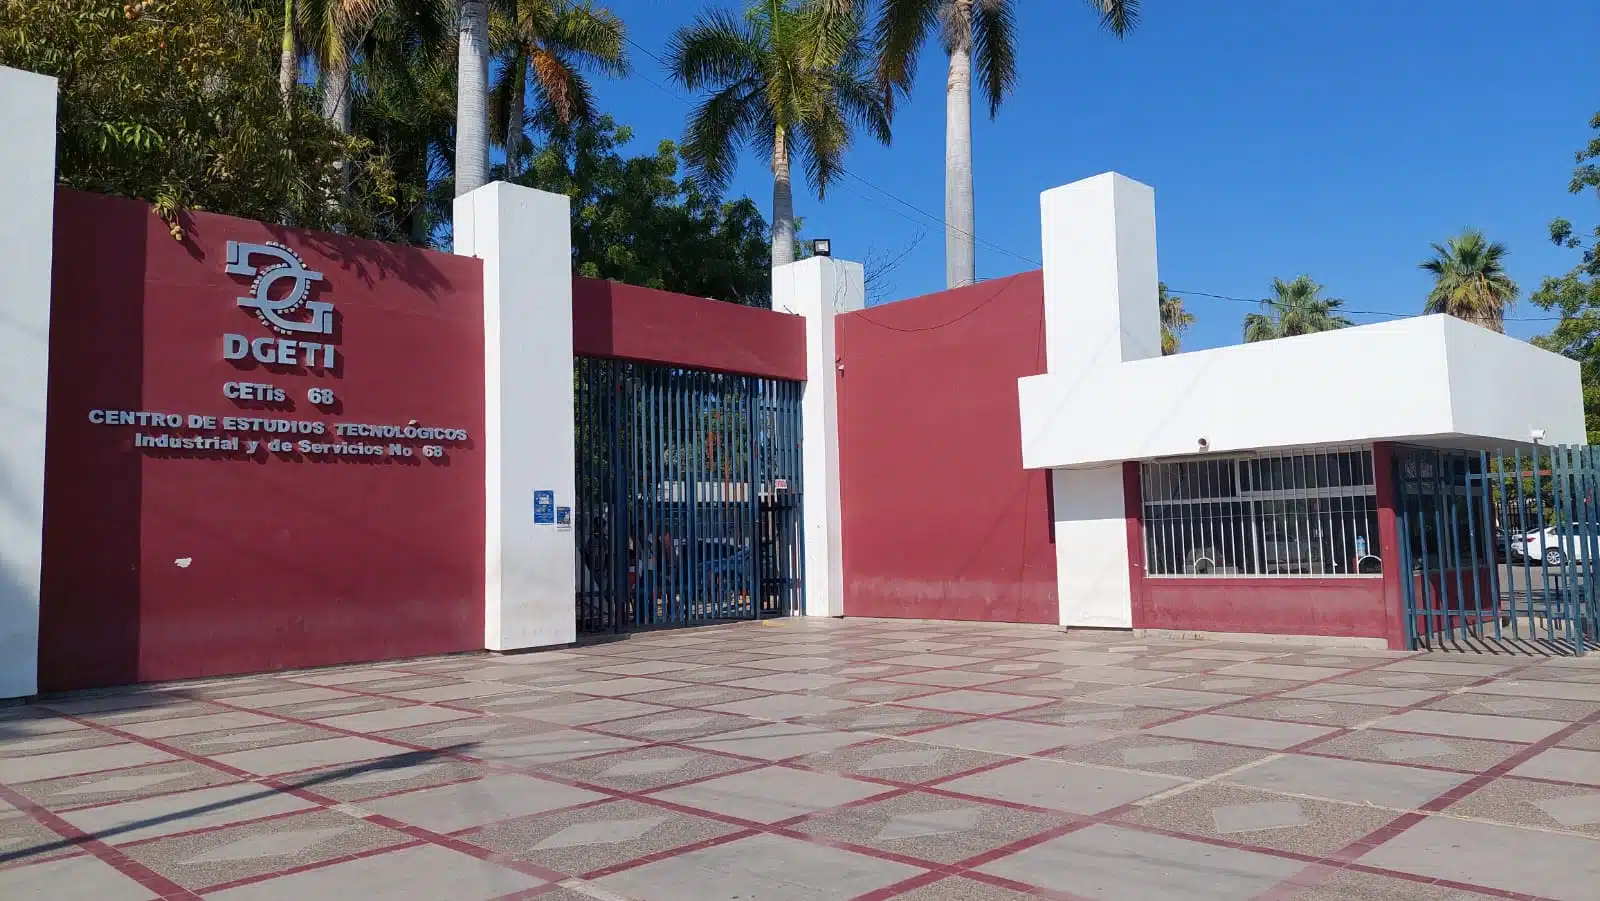 Estudiantes del CETis 68 en Los Mochis se despidieron de las aulas